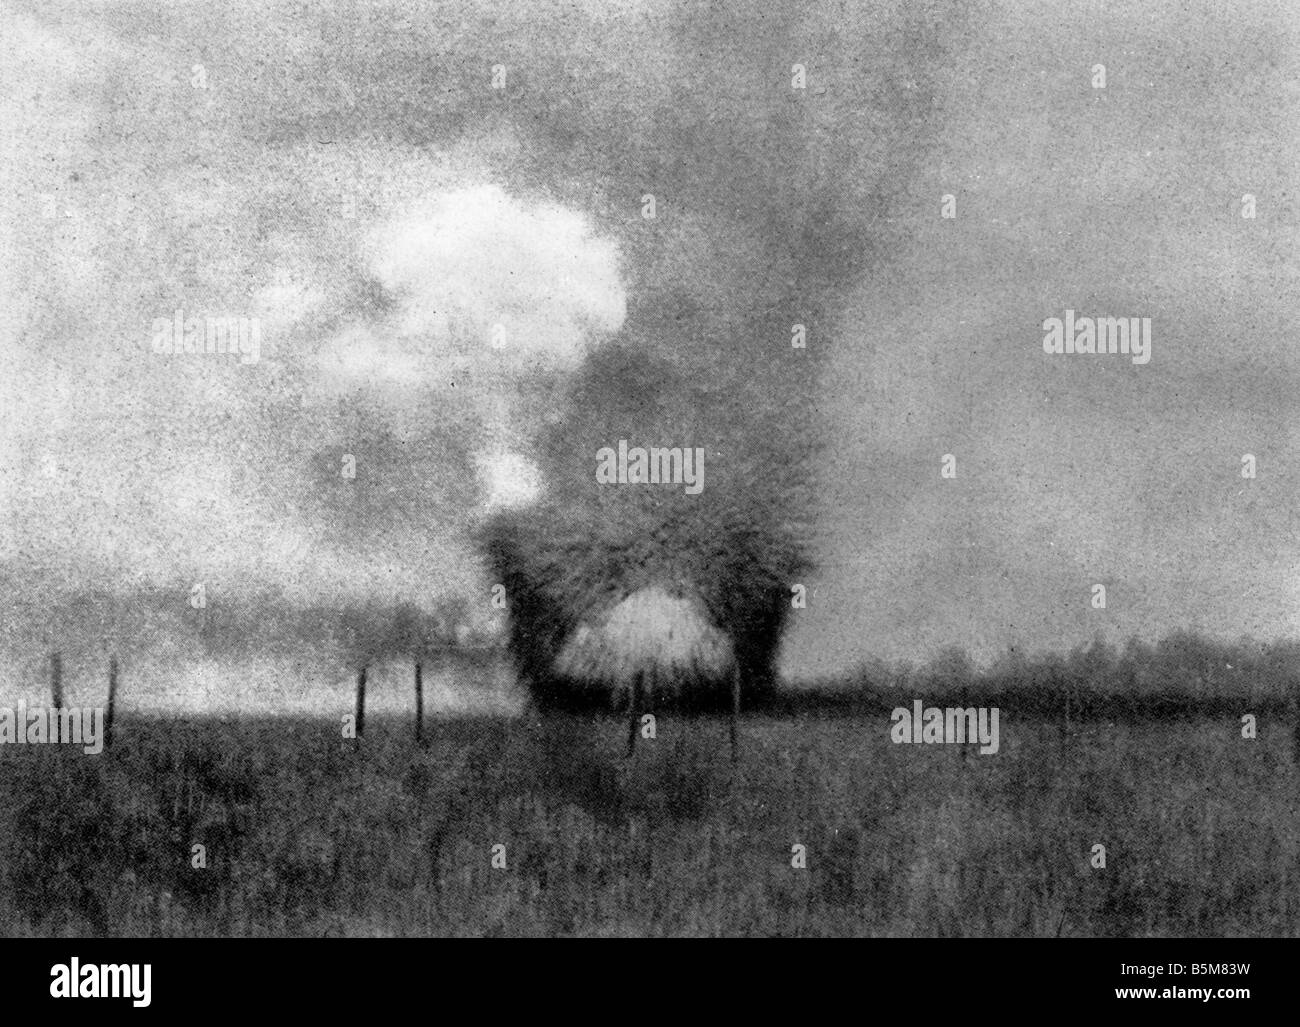 2 G55 A1 1916 1 Impatto della Shell foto c 1916 Storia WWI impatto Shell foto c 1916 Foto Stock